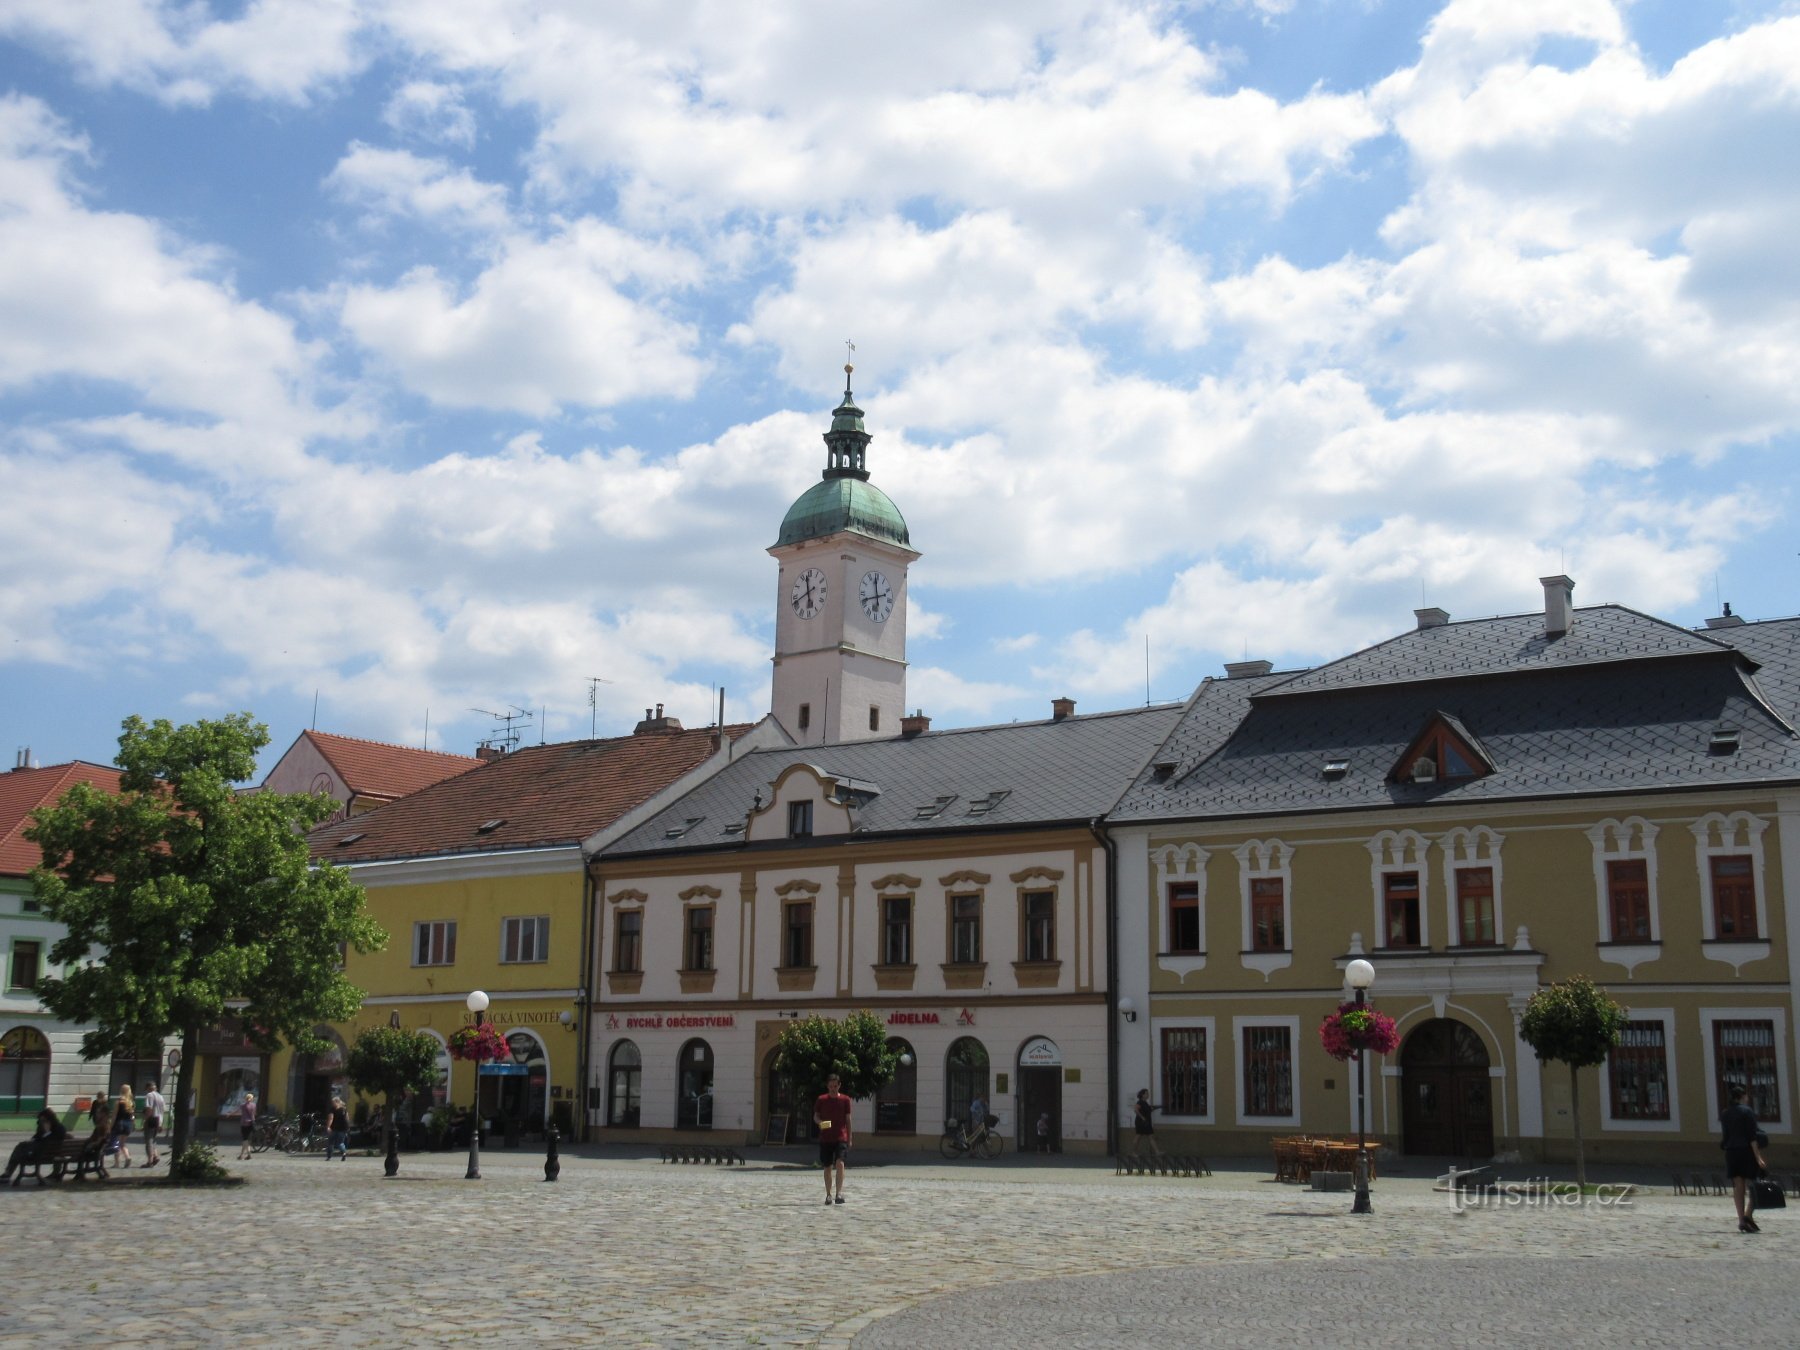 Mariánské náměstí - 右側は U Sovy の家で、旧市庁舎の塔の後ろにあります。